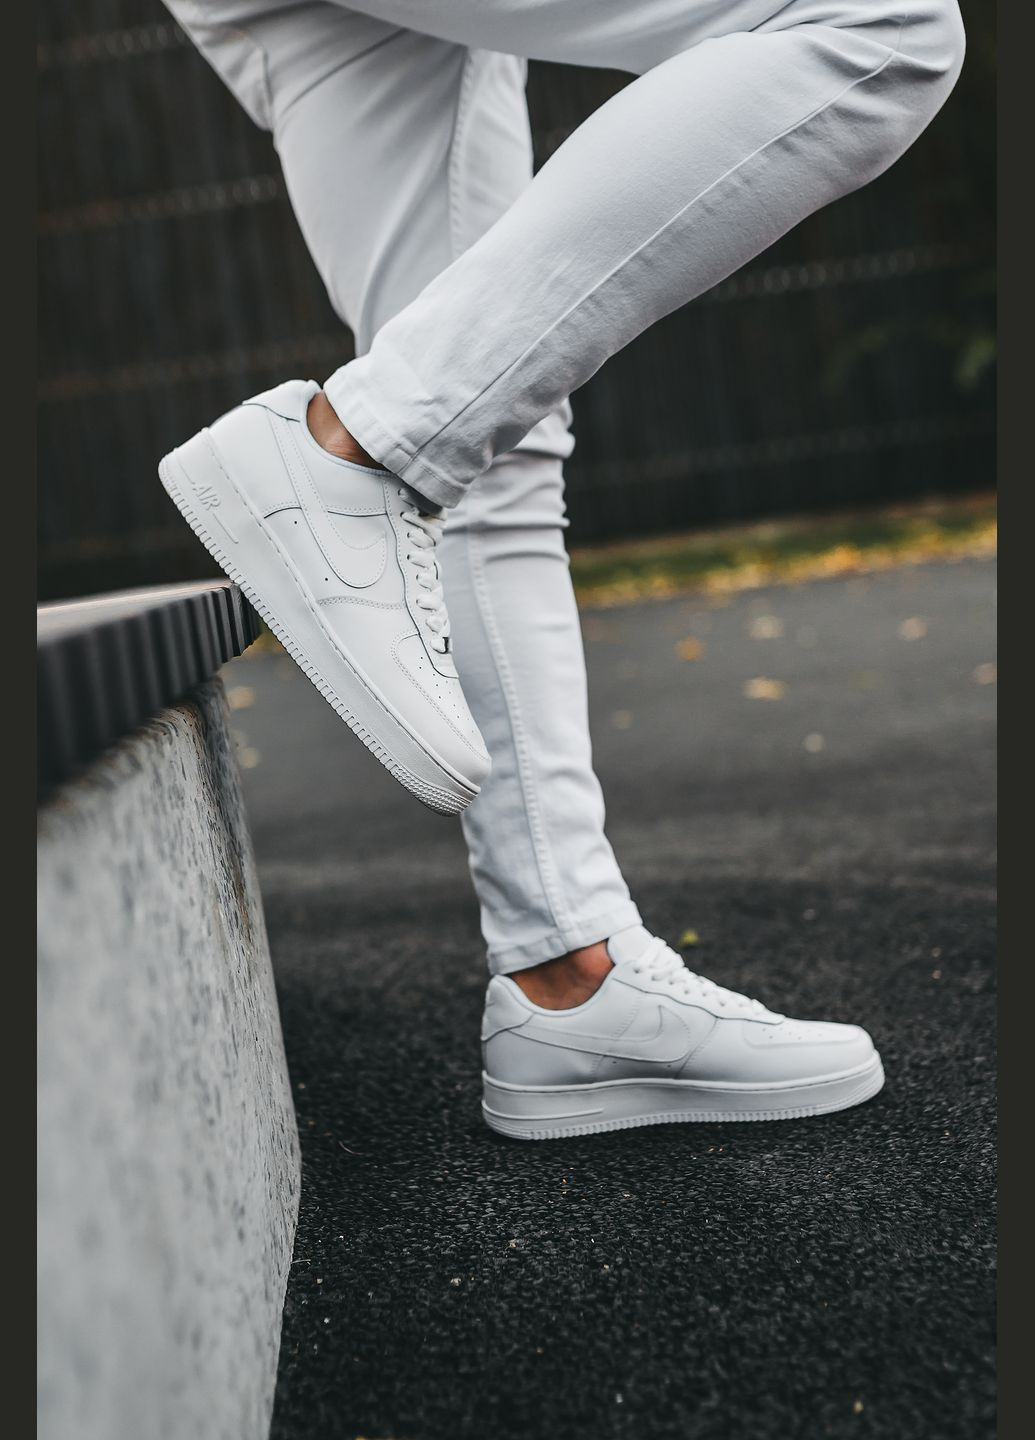 Белые кроссовки унисекс Nike Air Force 1 White